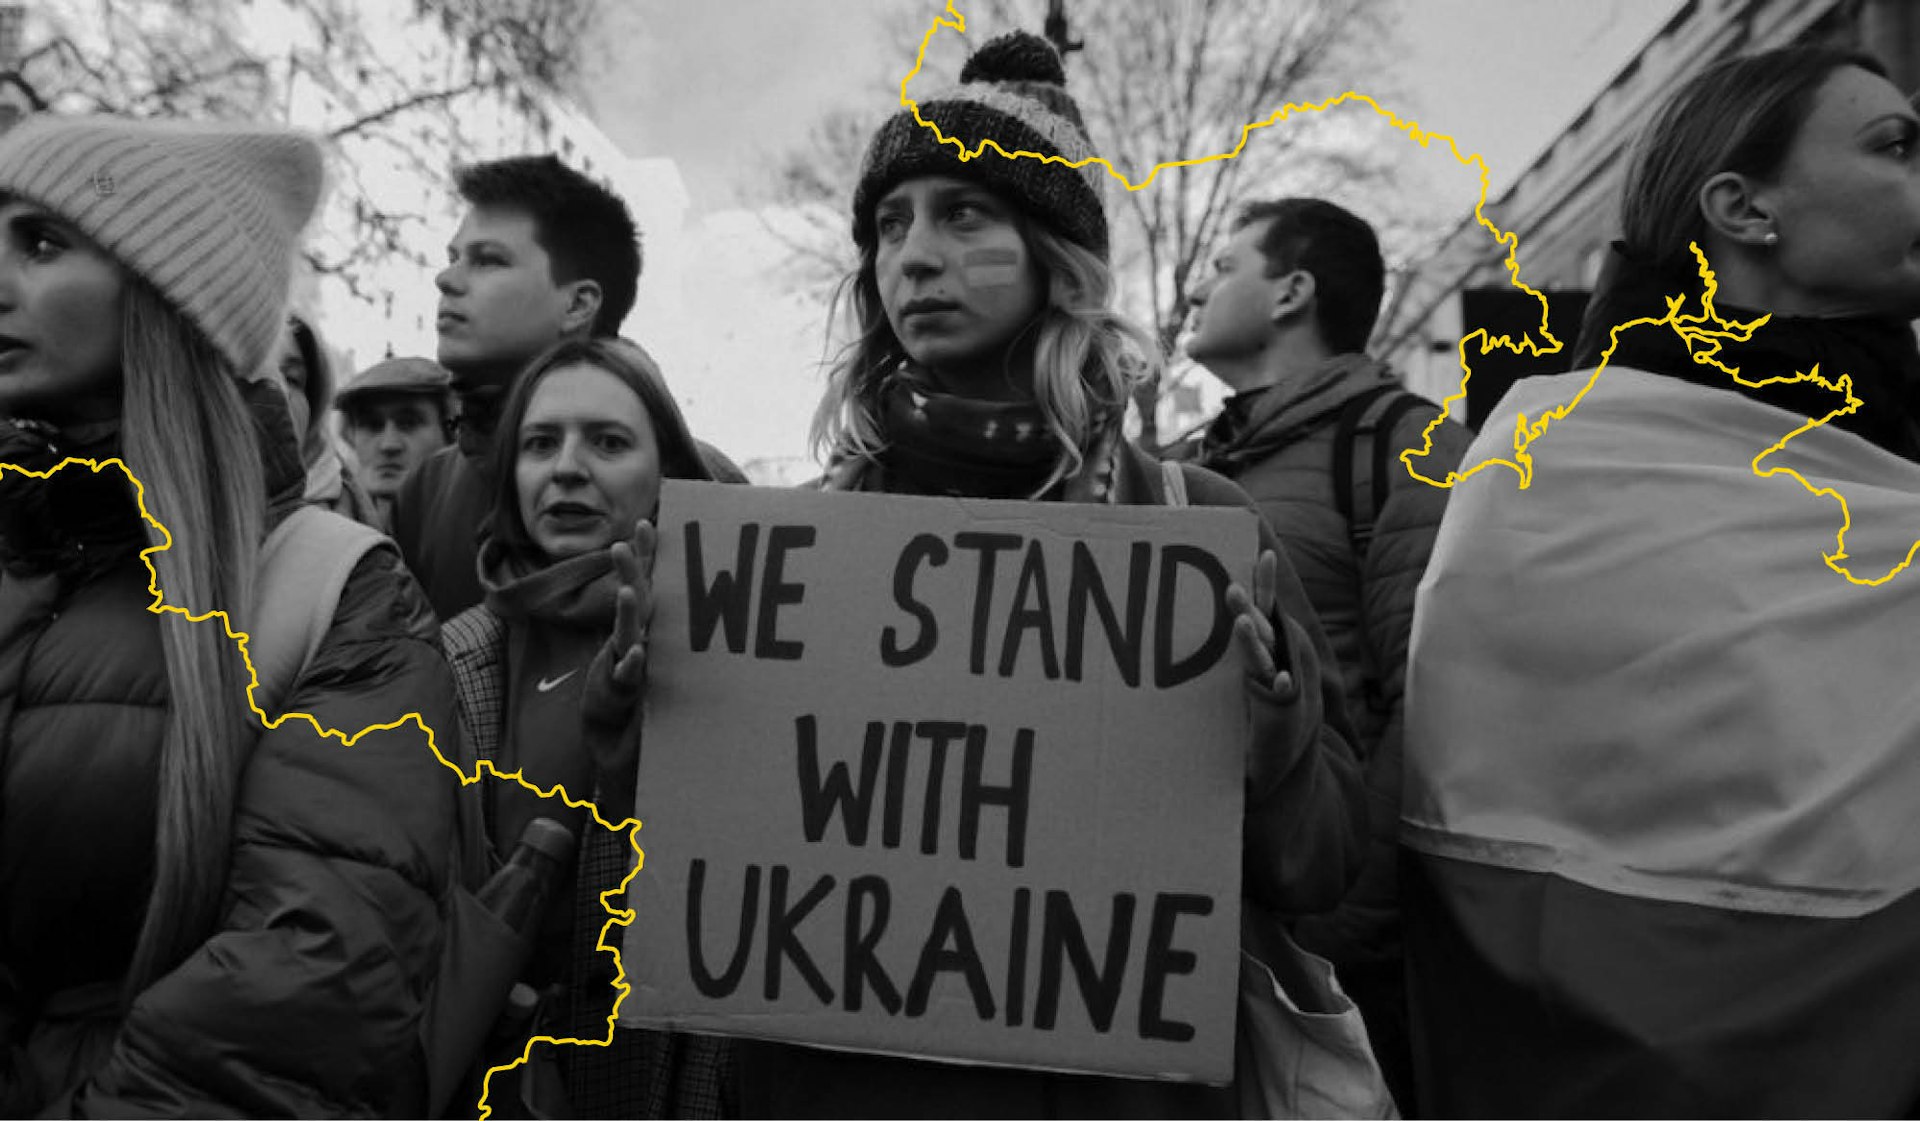 The devastating plight of Ukranians fleeing war